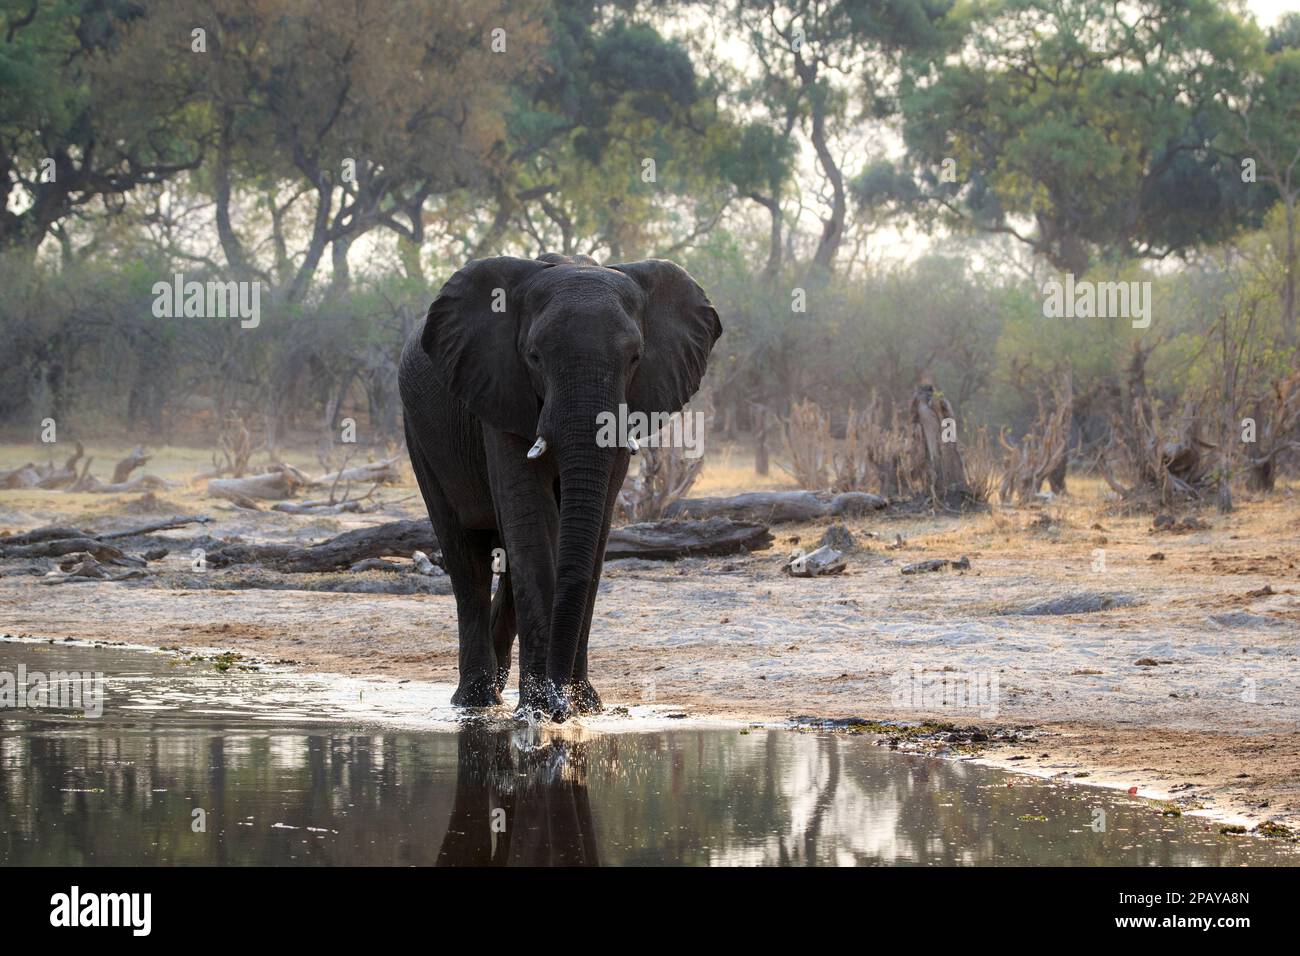 Elefant Loxodonta africana steht im flachen Wasser und trinkt, von der Sonne beleuchtet. Reflexion im Wasser. Okavango Delta, Botsuana, Afrika Stockfoto